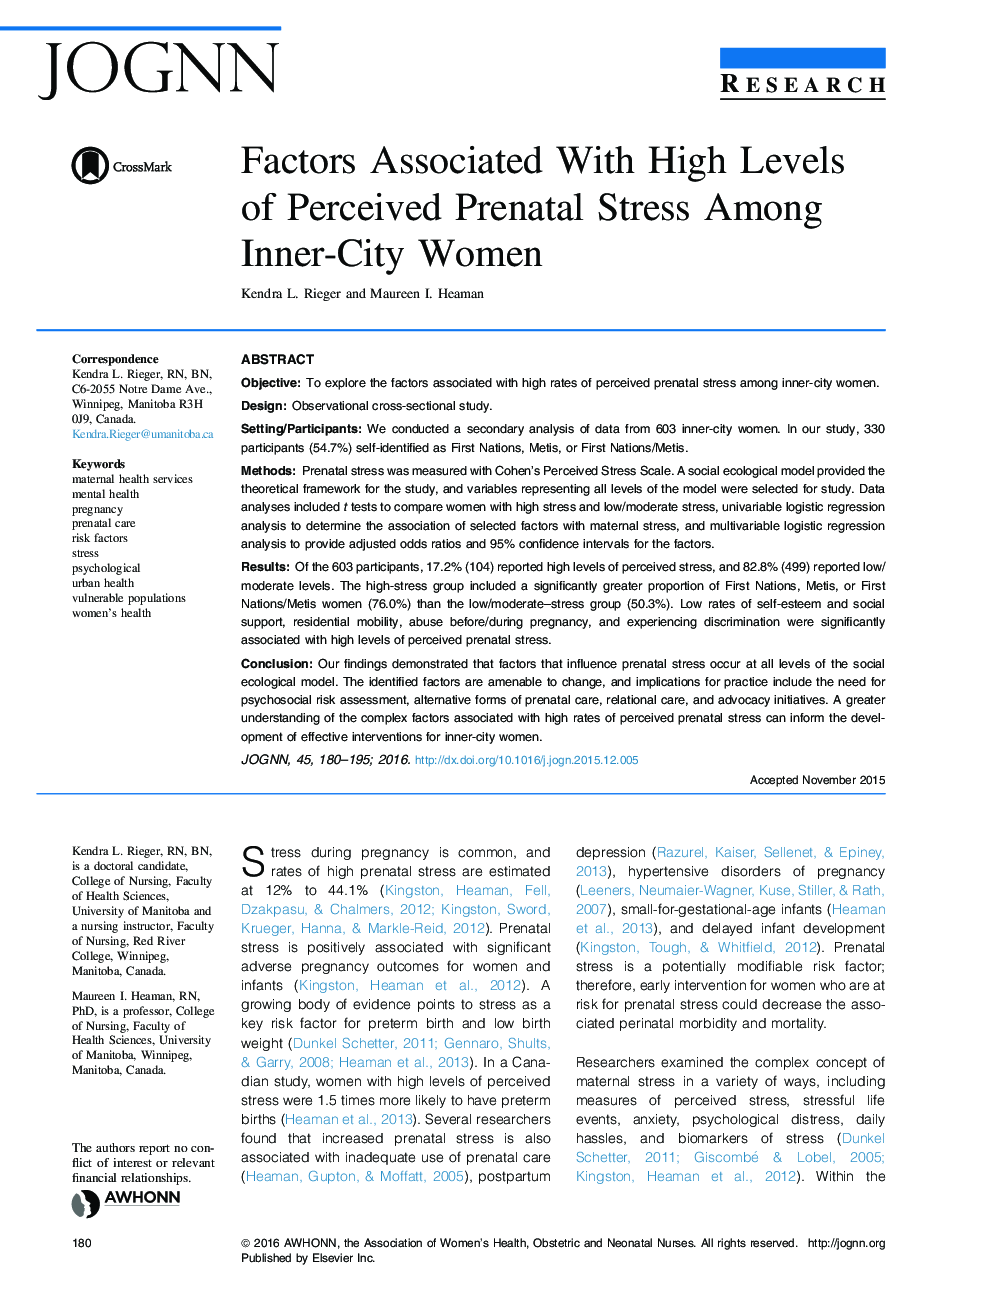 عوامل مرتبط با سطوح بالای فشارخون قبل از تولد در زنان درون شهری است 